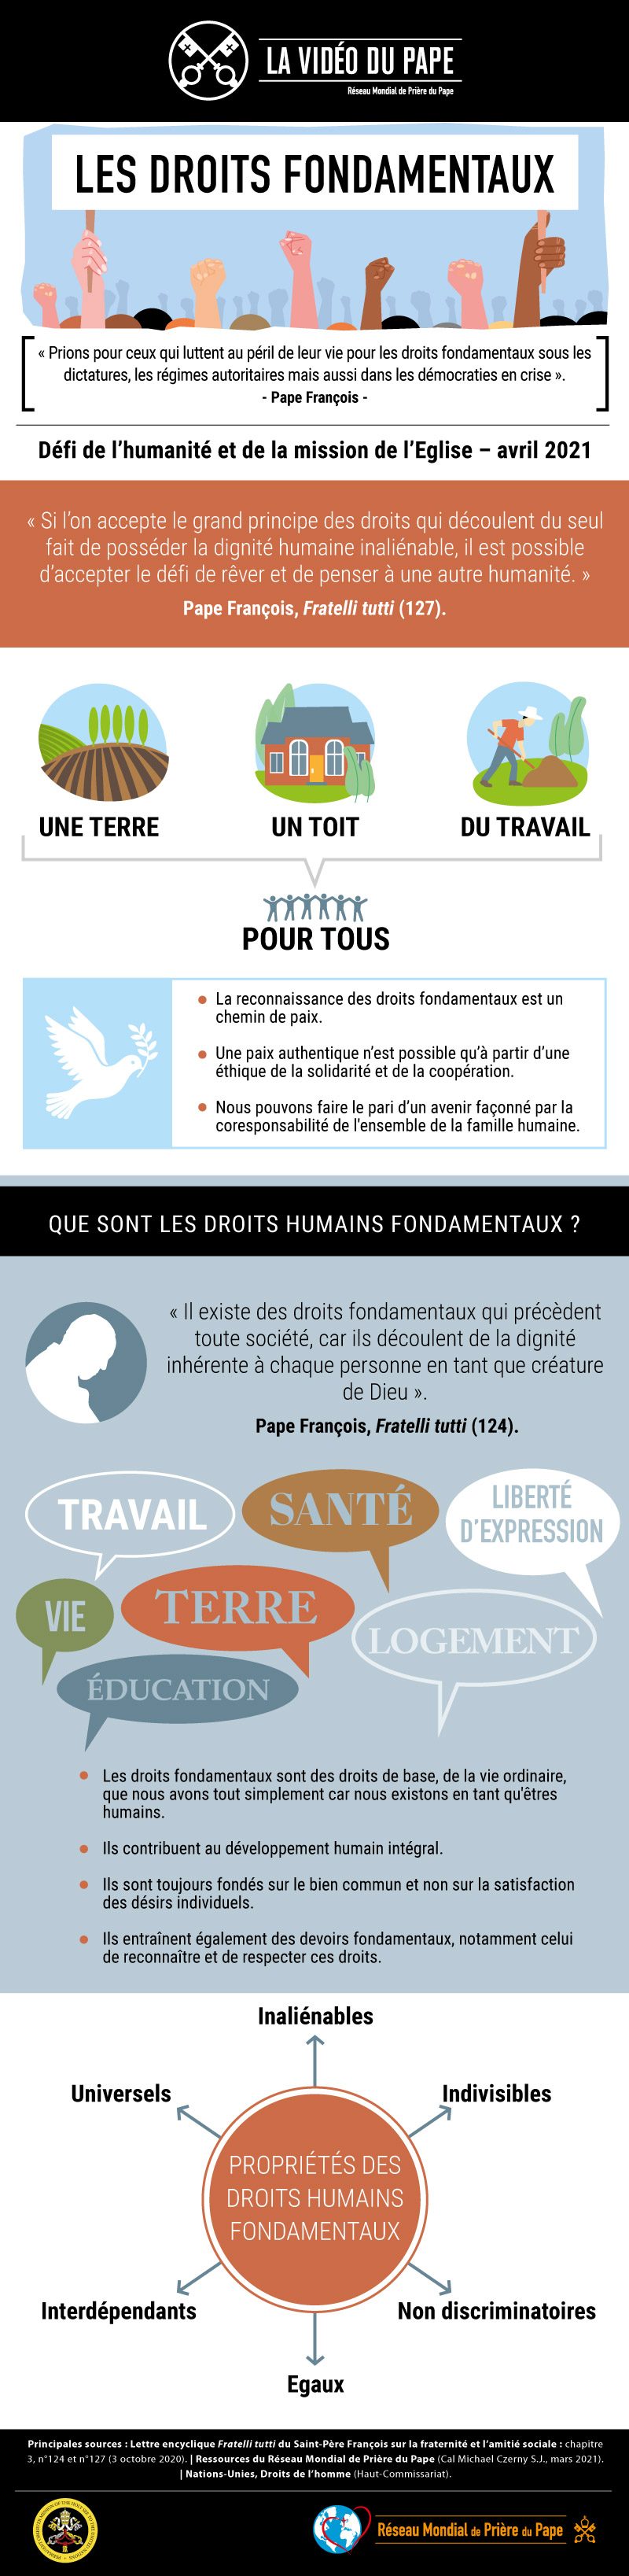 Infographie-TPV-4-2021-FR-Les-droits-fondamentaux.jpg